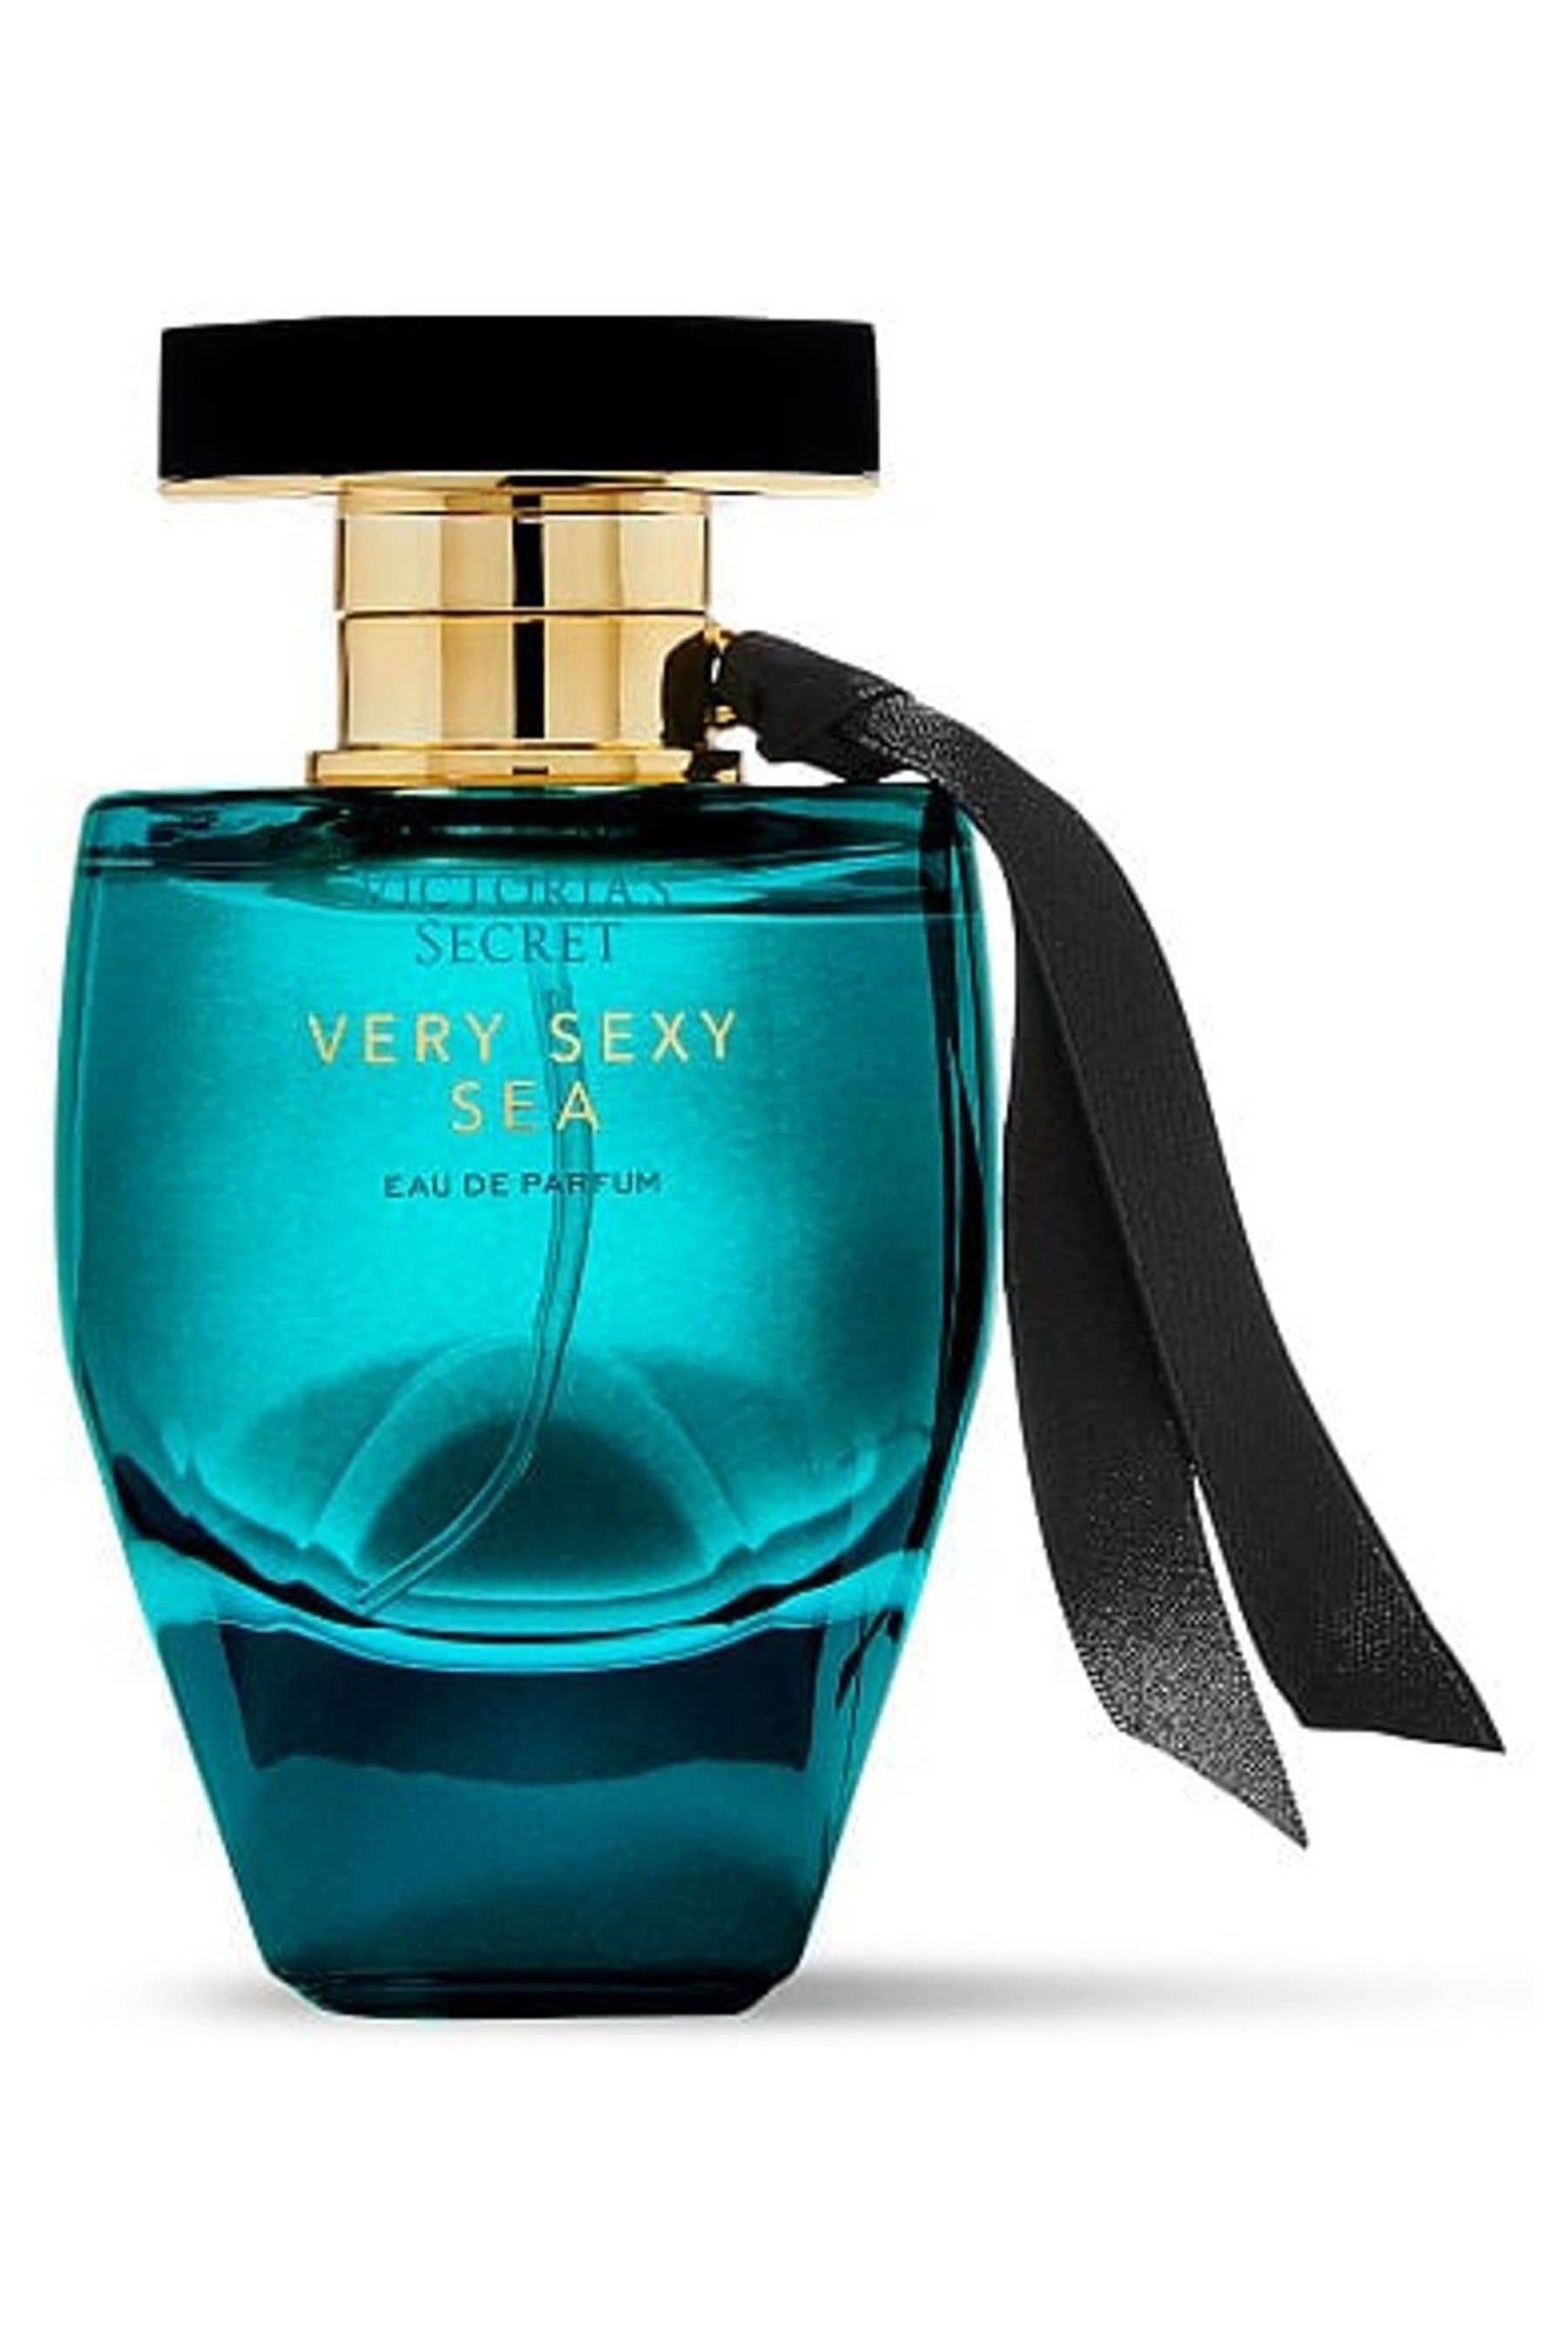 Buy Victoria's Secret Very Sexy Sea Eau de Parfum from the Victoria's ...